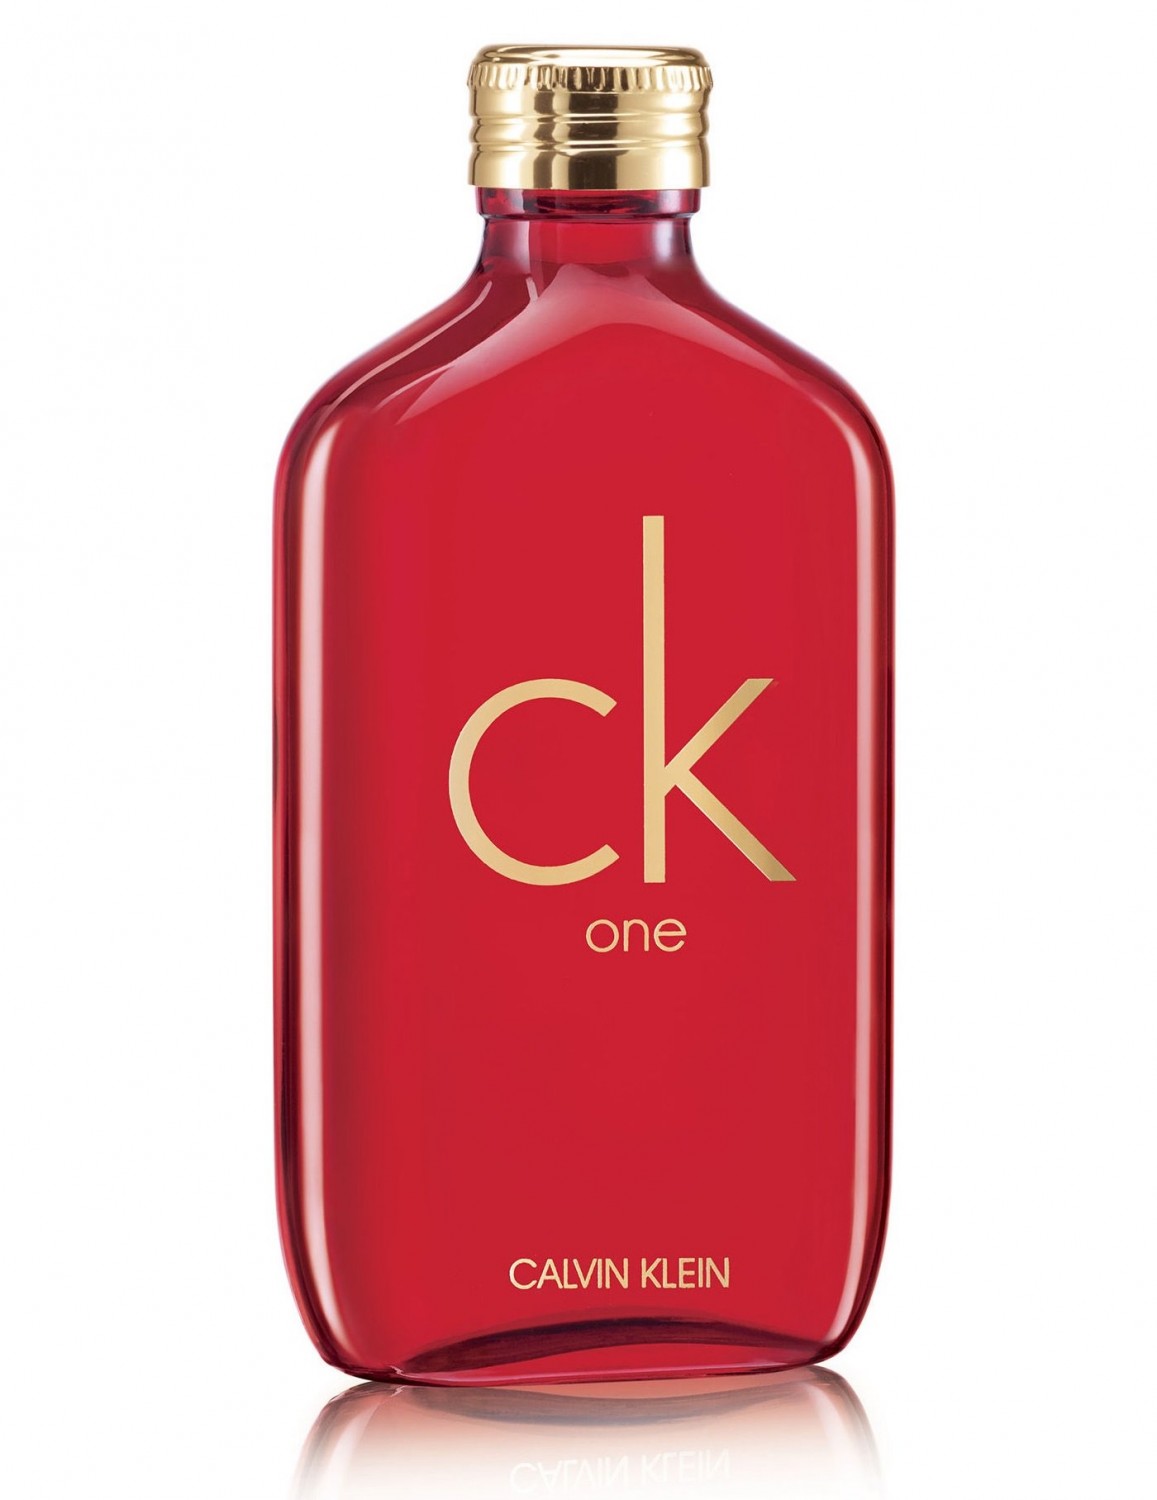 Calvin Klein CK One Collector’s Edition Perfume